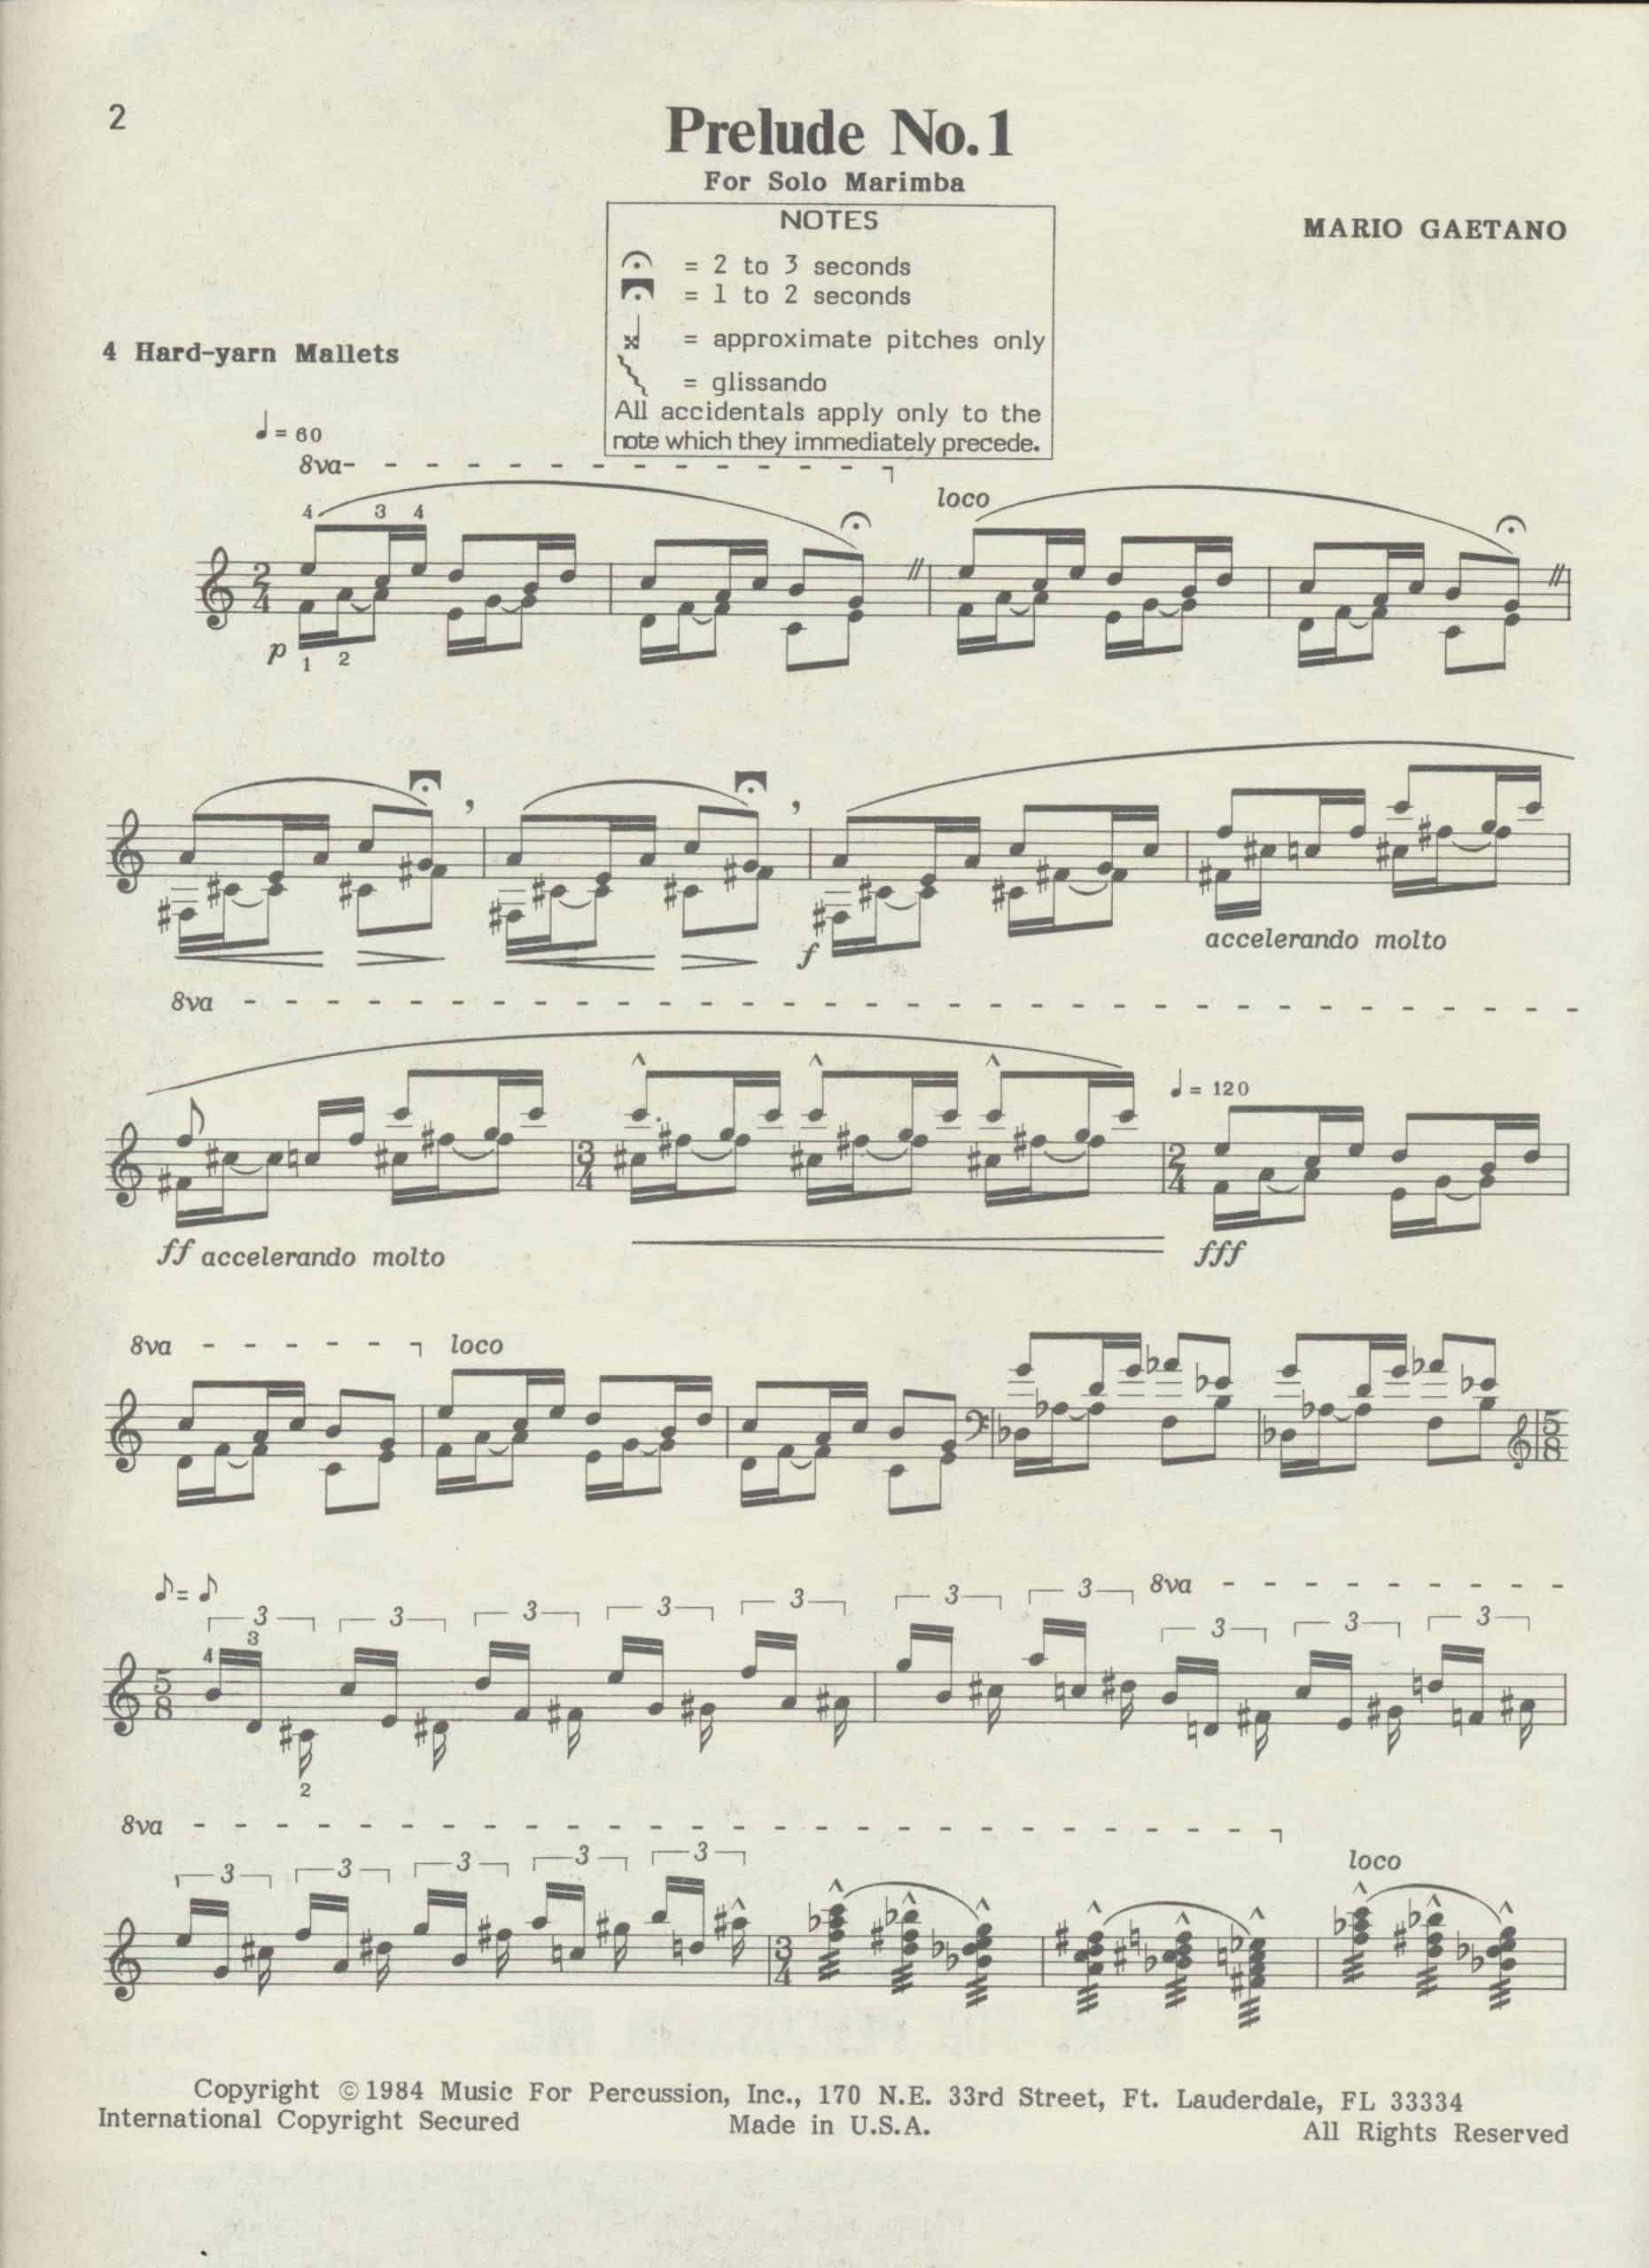 Prelude No. 1 by Mario Gaetano